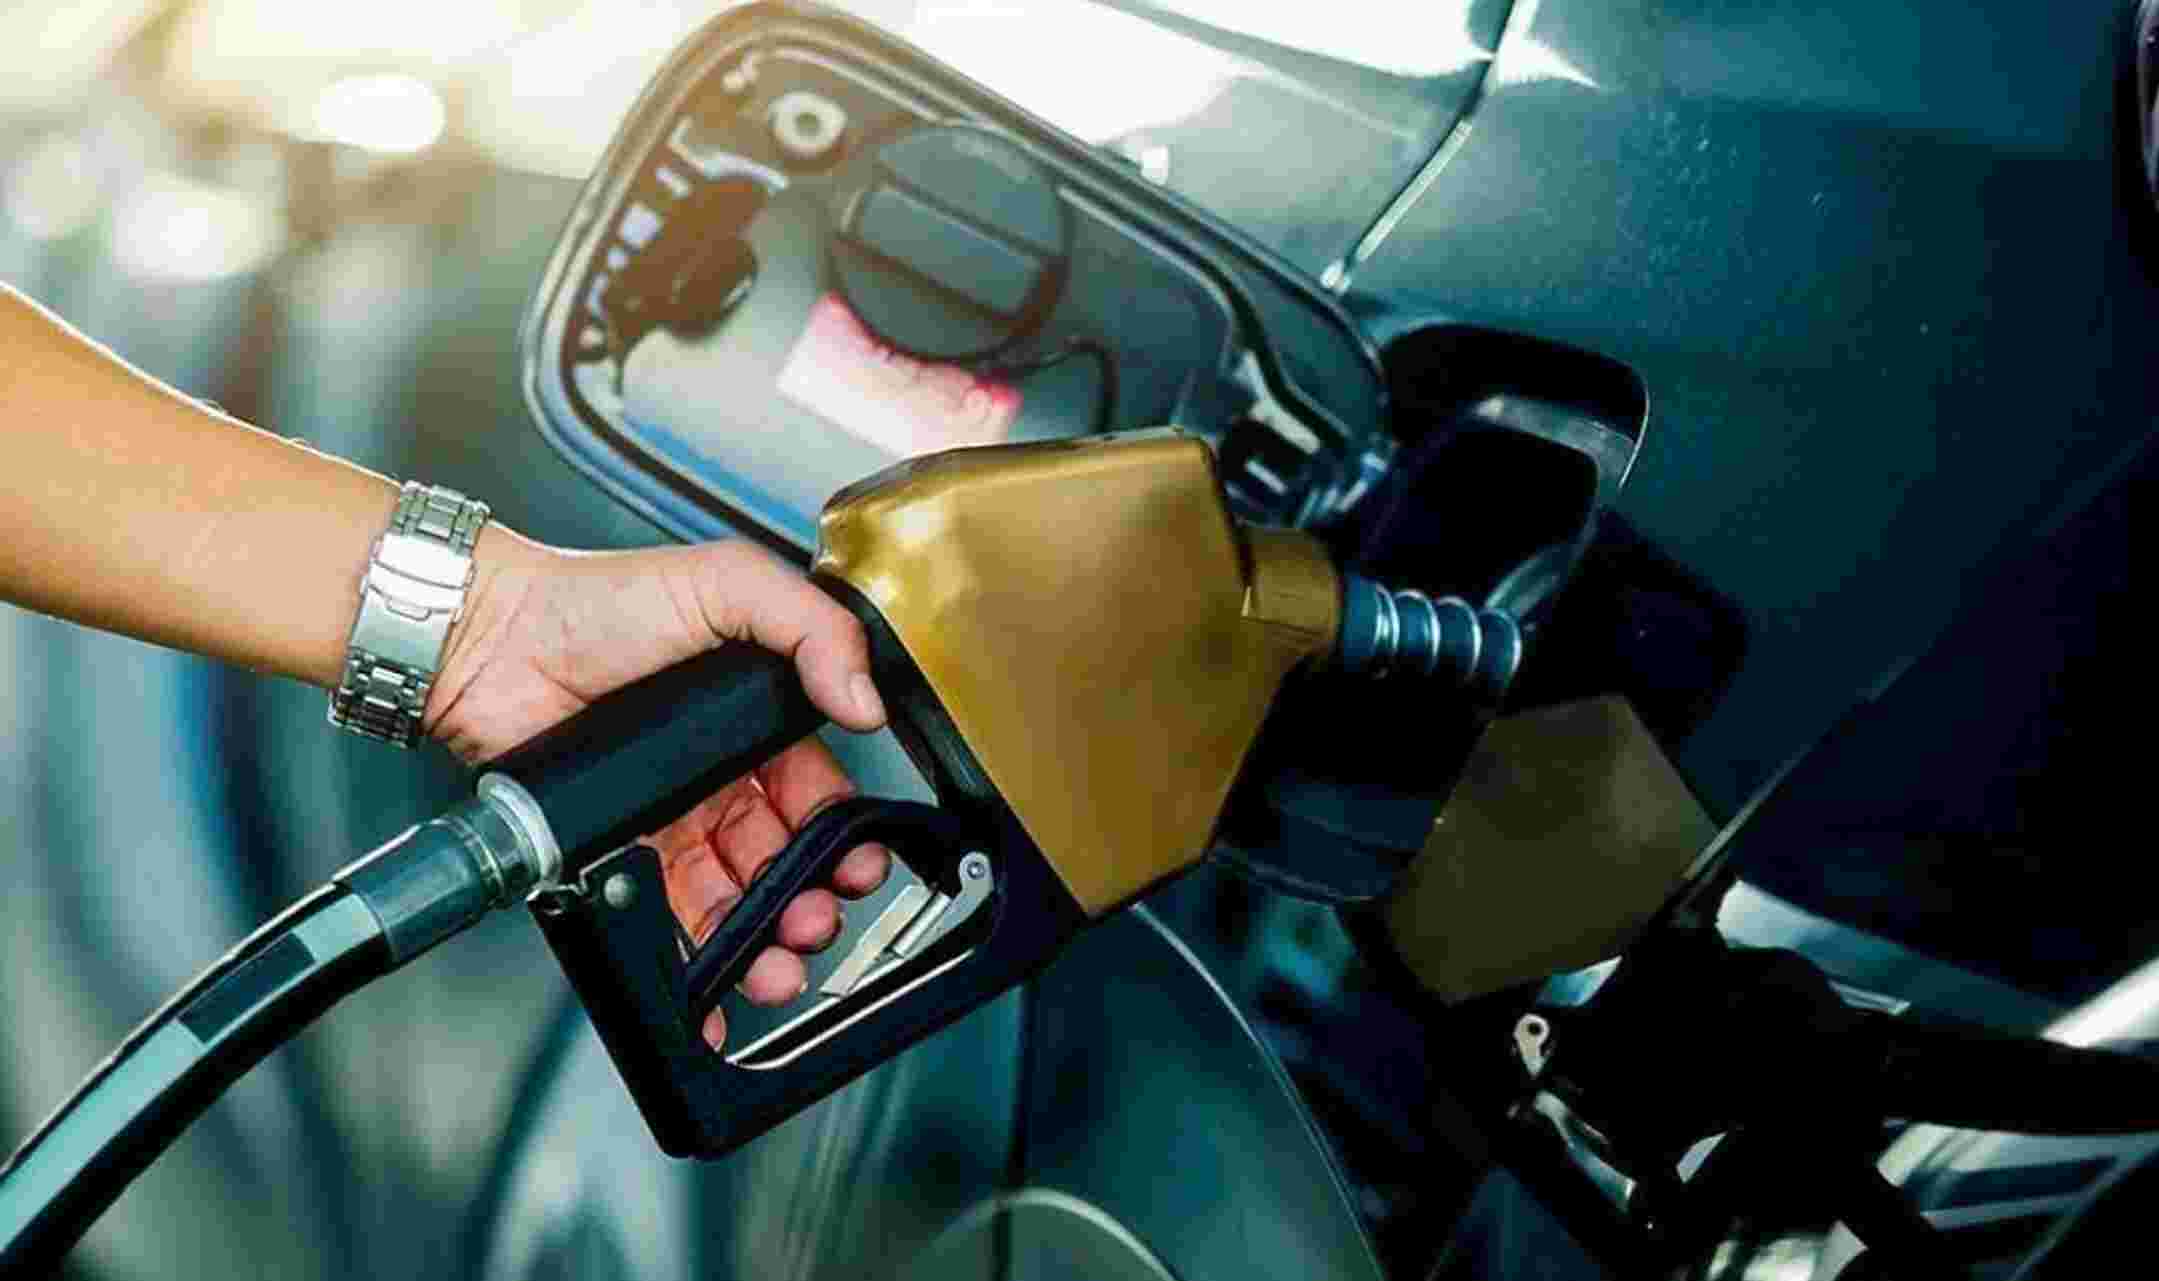 Delhi News: दिल्ली में बिना इस कागज के नहीं मिलेगा Petrol-Diesel, 25 अक्टूबर से लागू हो जाएगा नियम